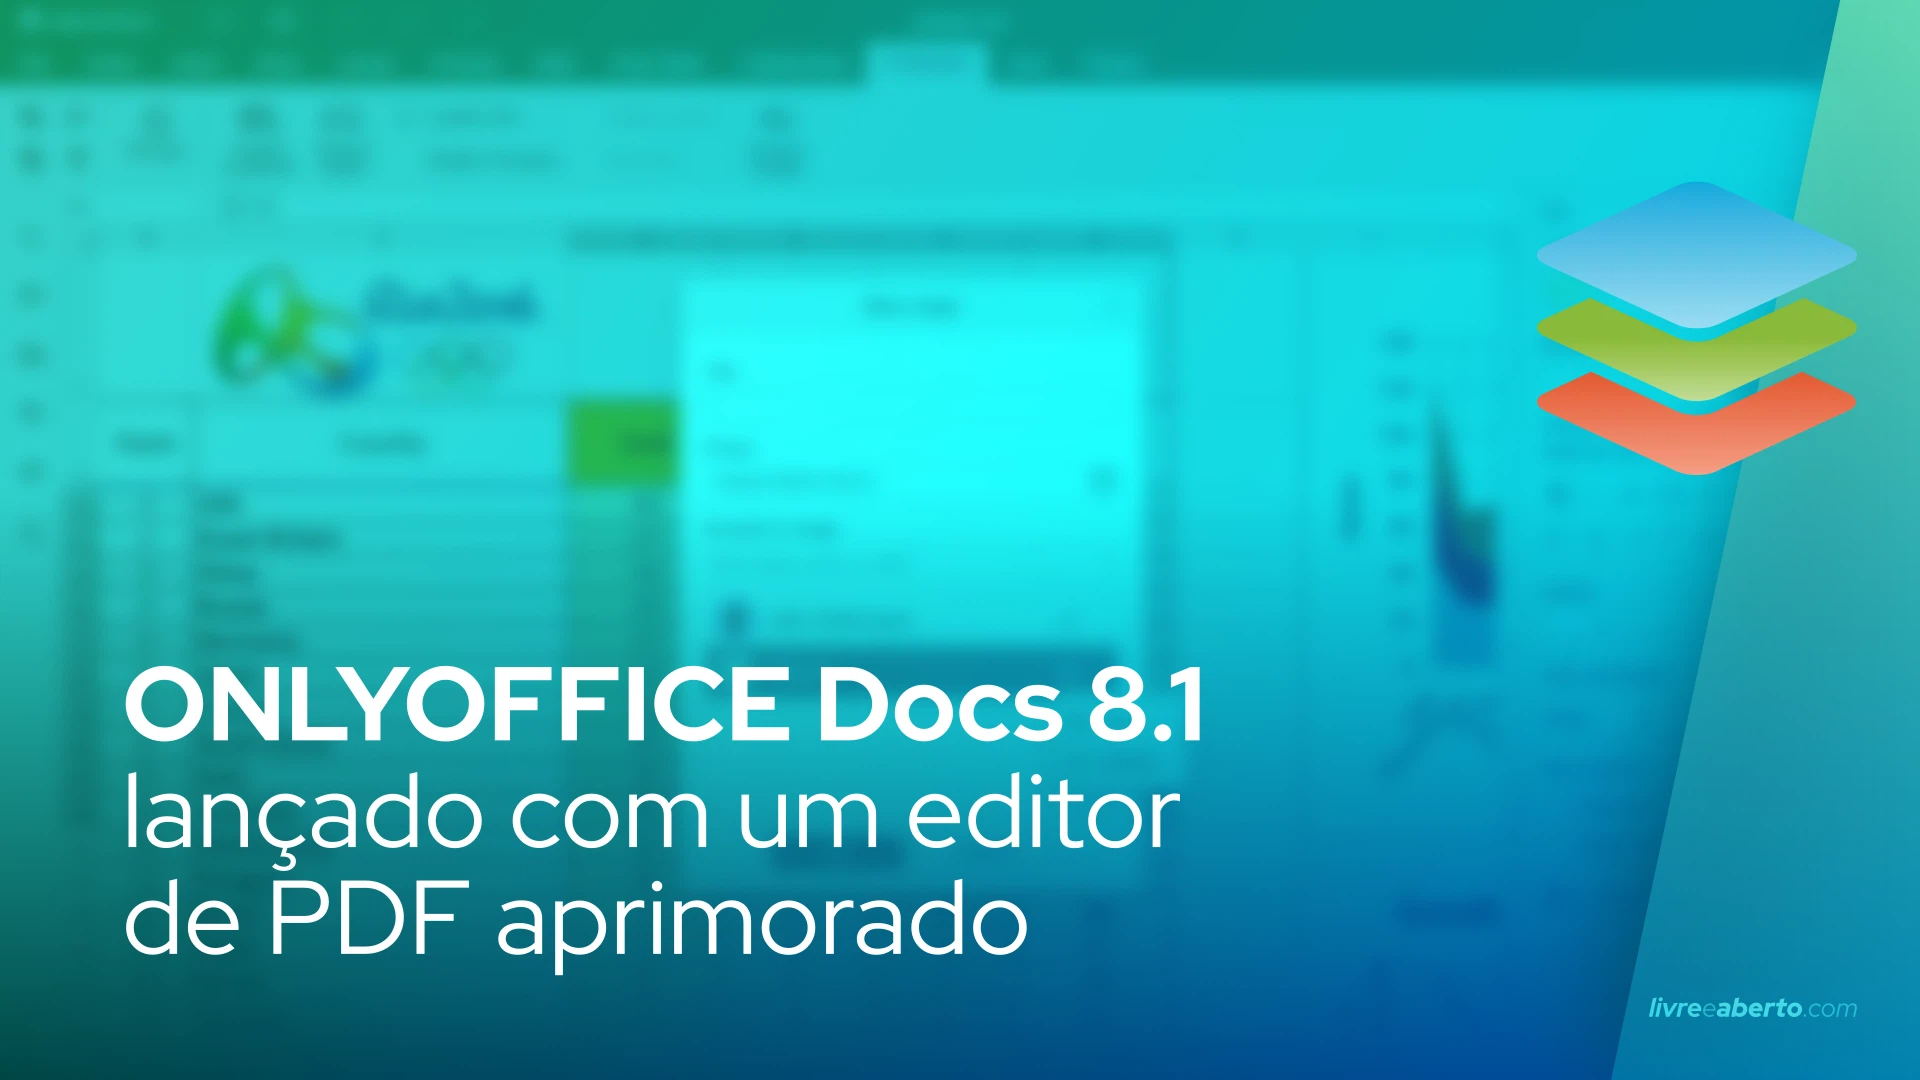 ONLYOFFICE Docs 8.1 lançado com um editor de PDF aprimorado